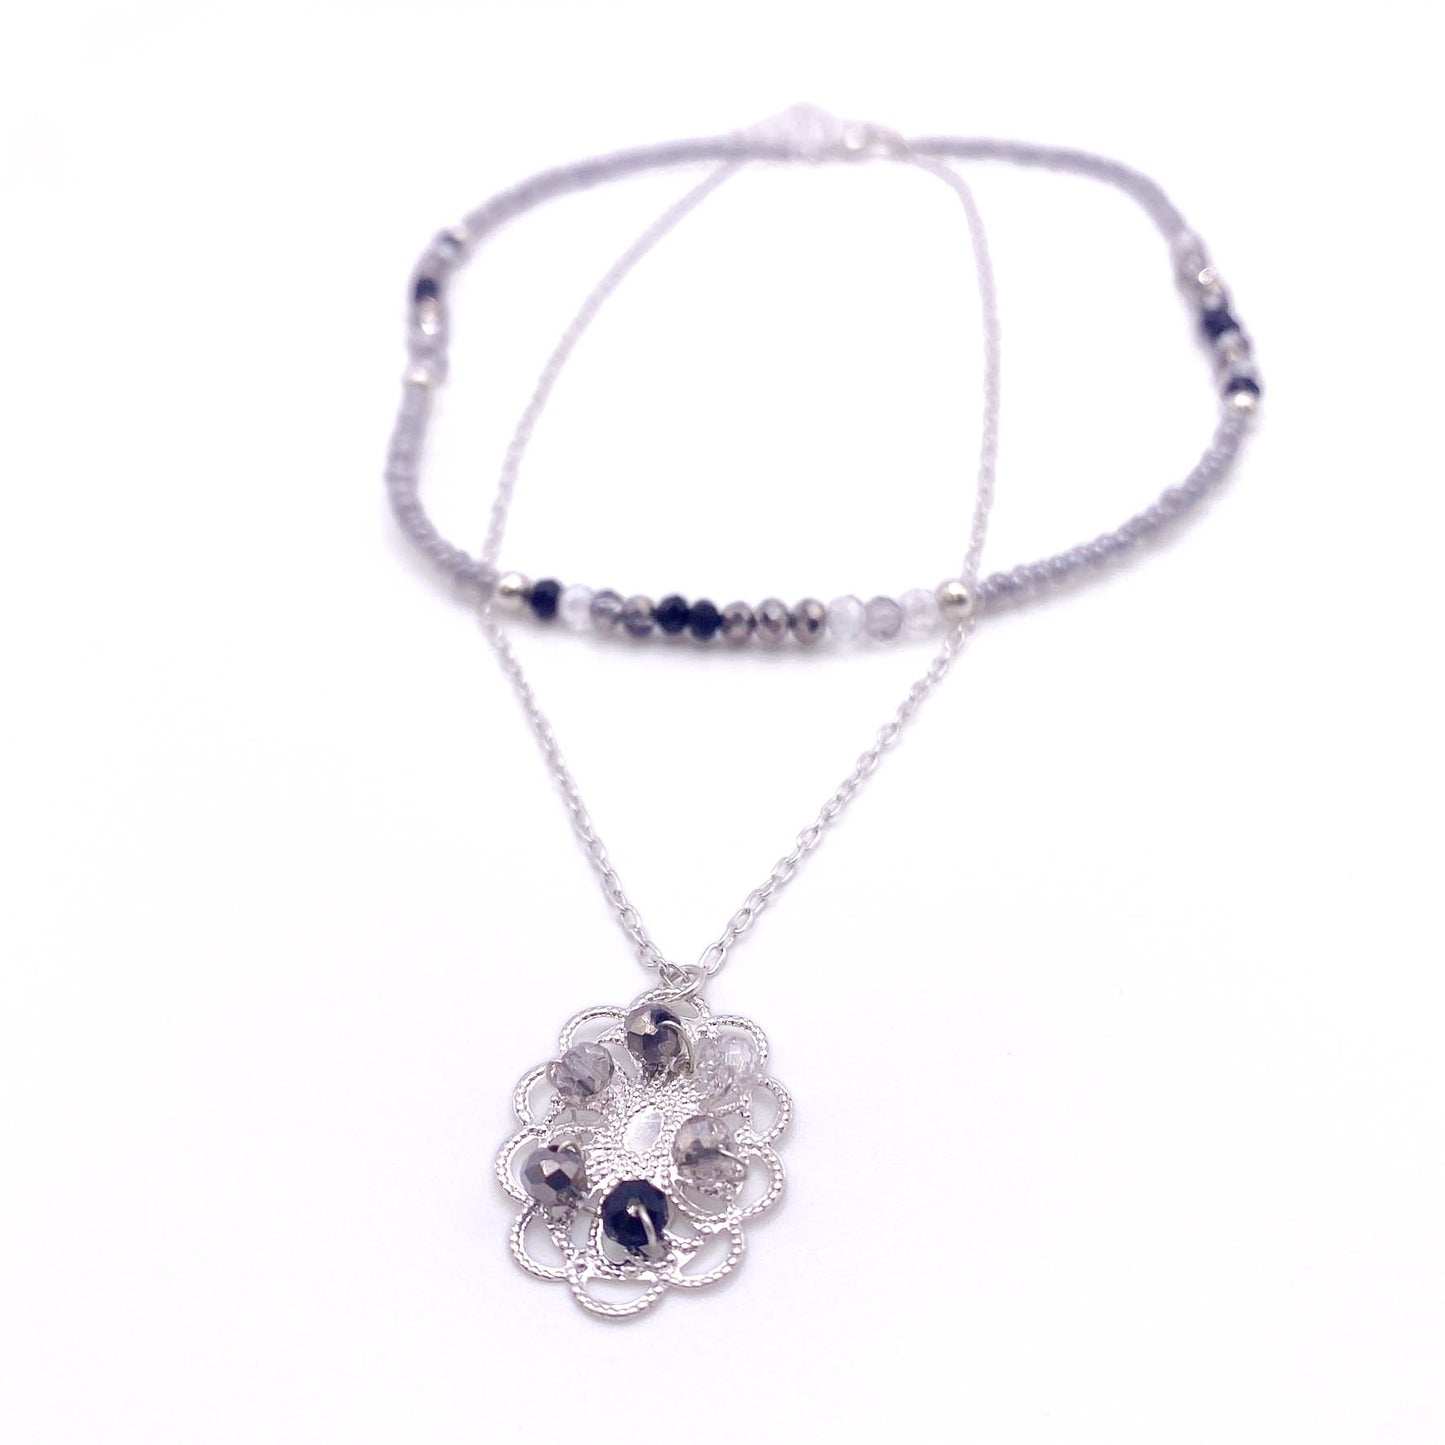 Dianthus necklace